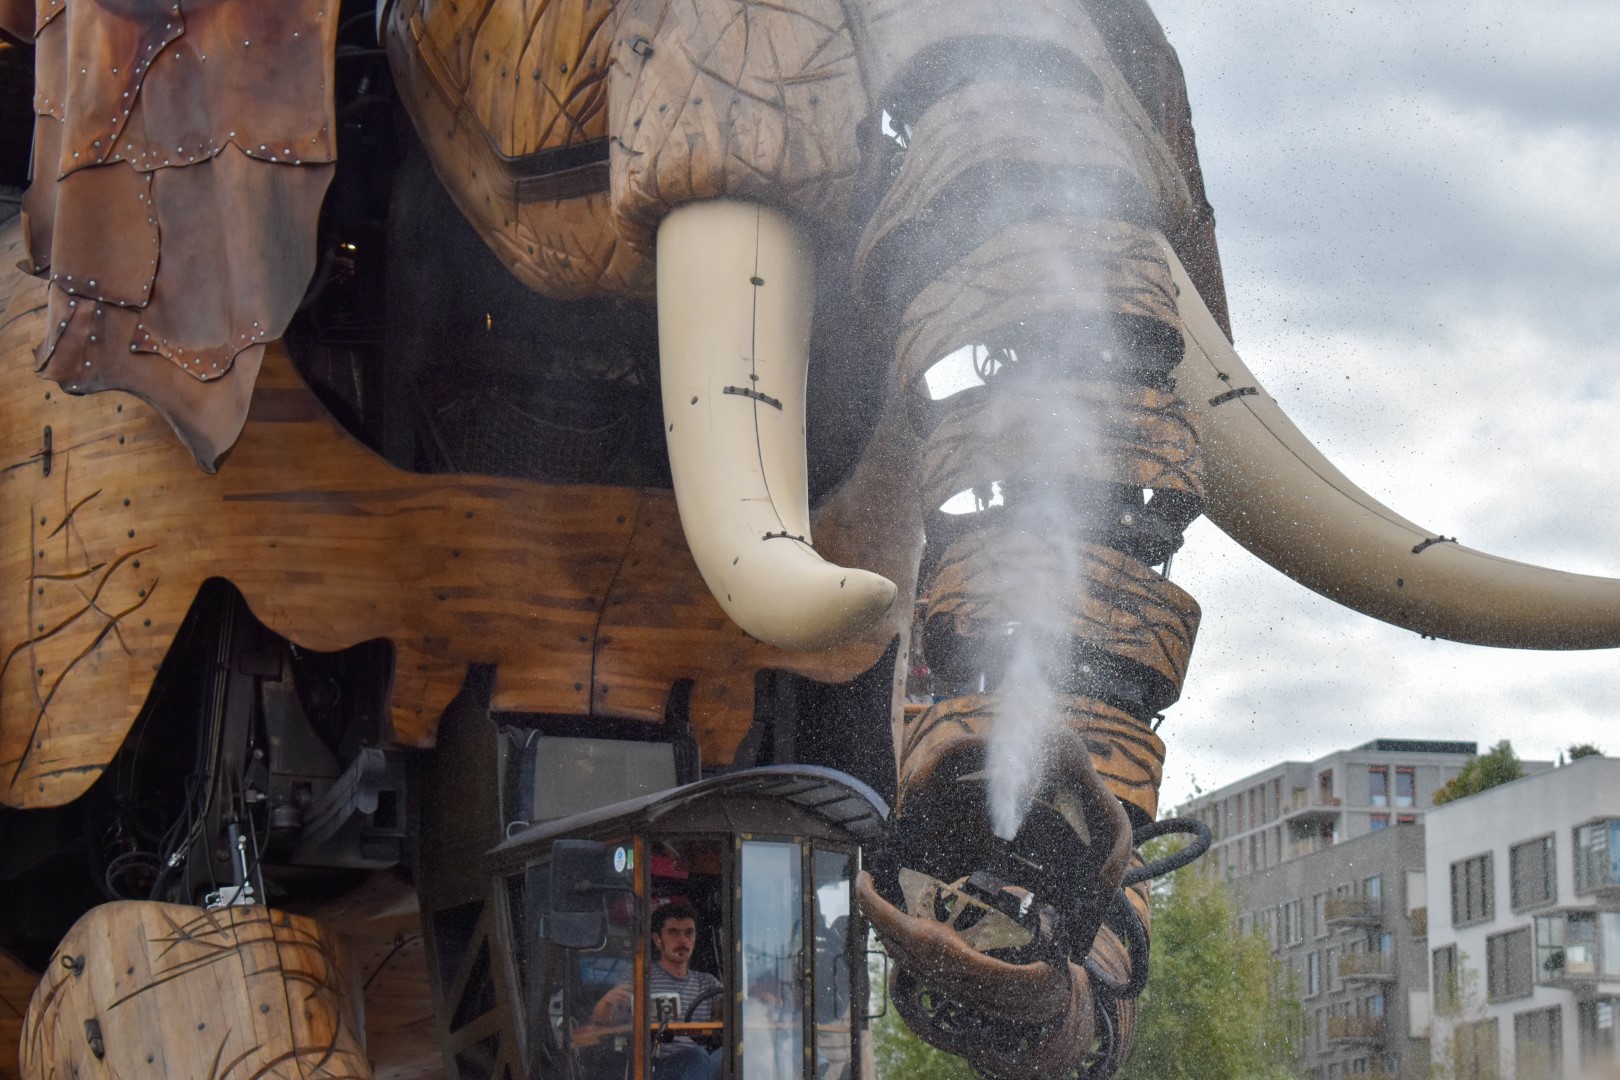 Les Machines de l'ïle's life-size mechanical elephant, Nantes